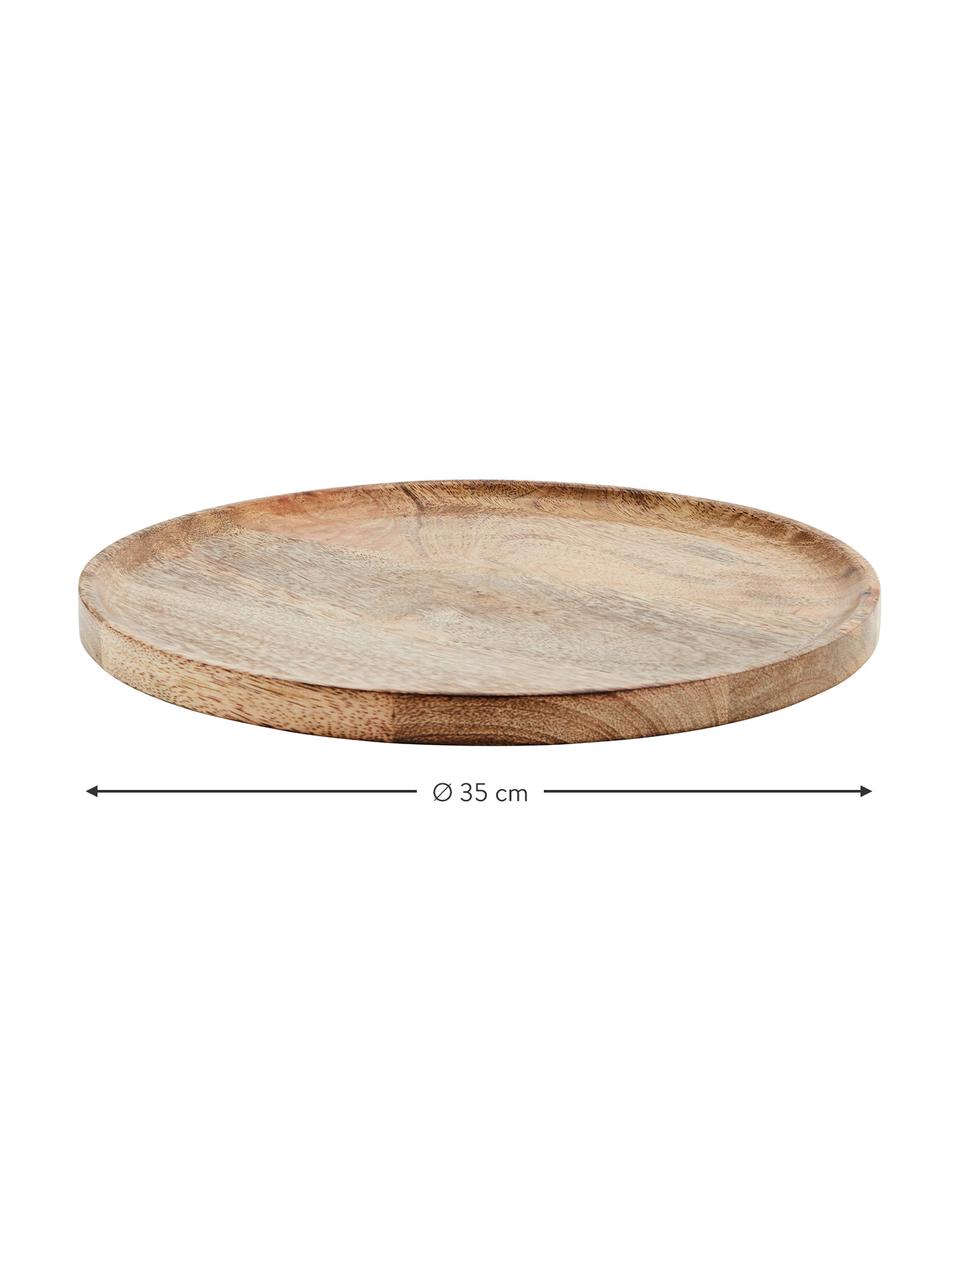 Deko-Tablett Mango aus Holz, Mangoholz, Helles Holz, Ø 35 cm